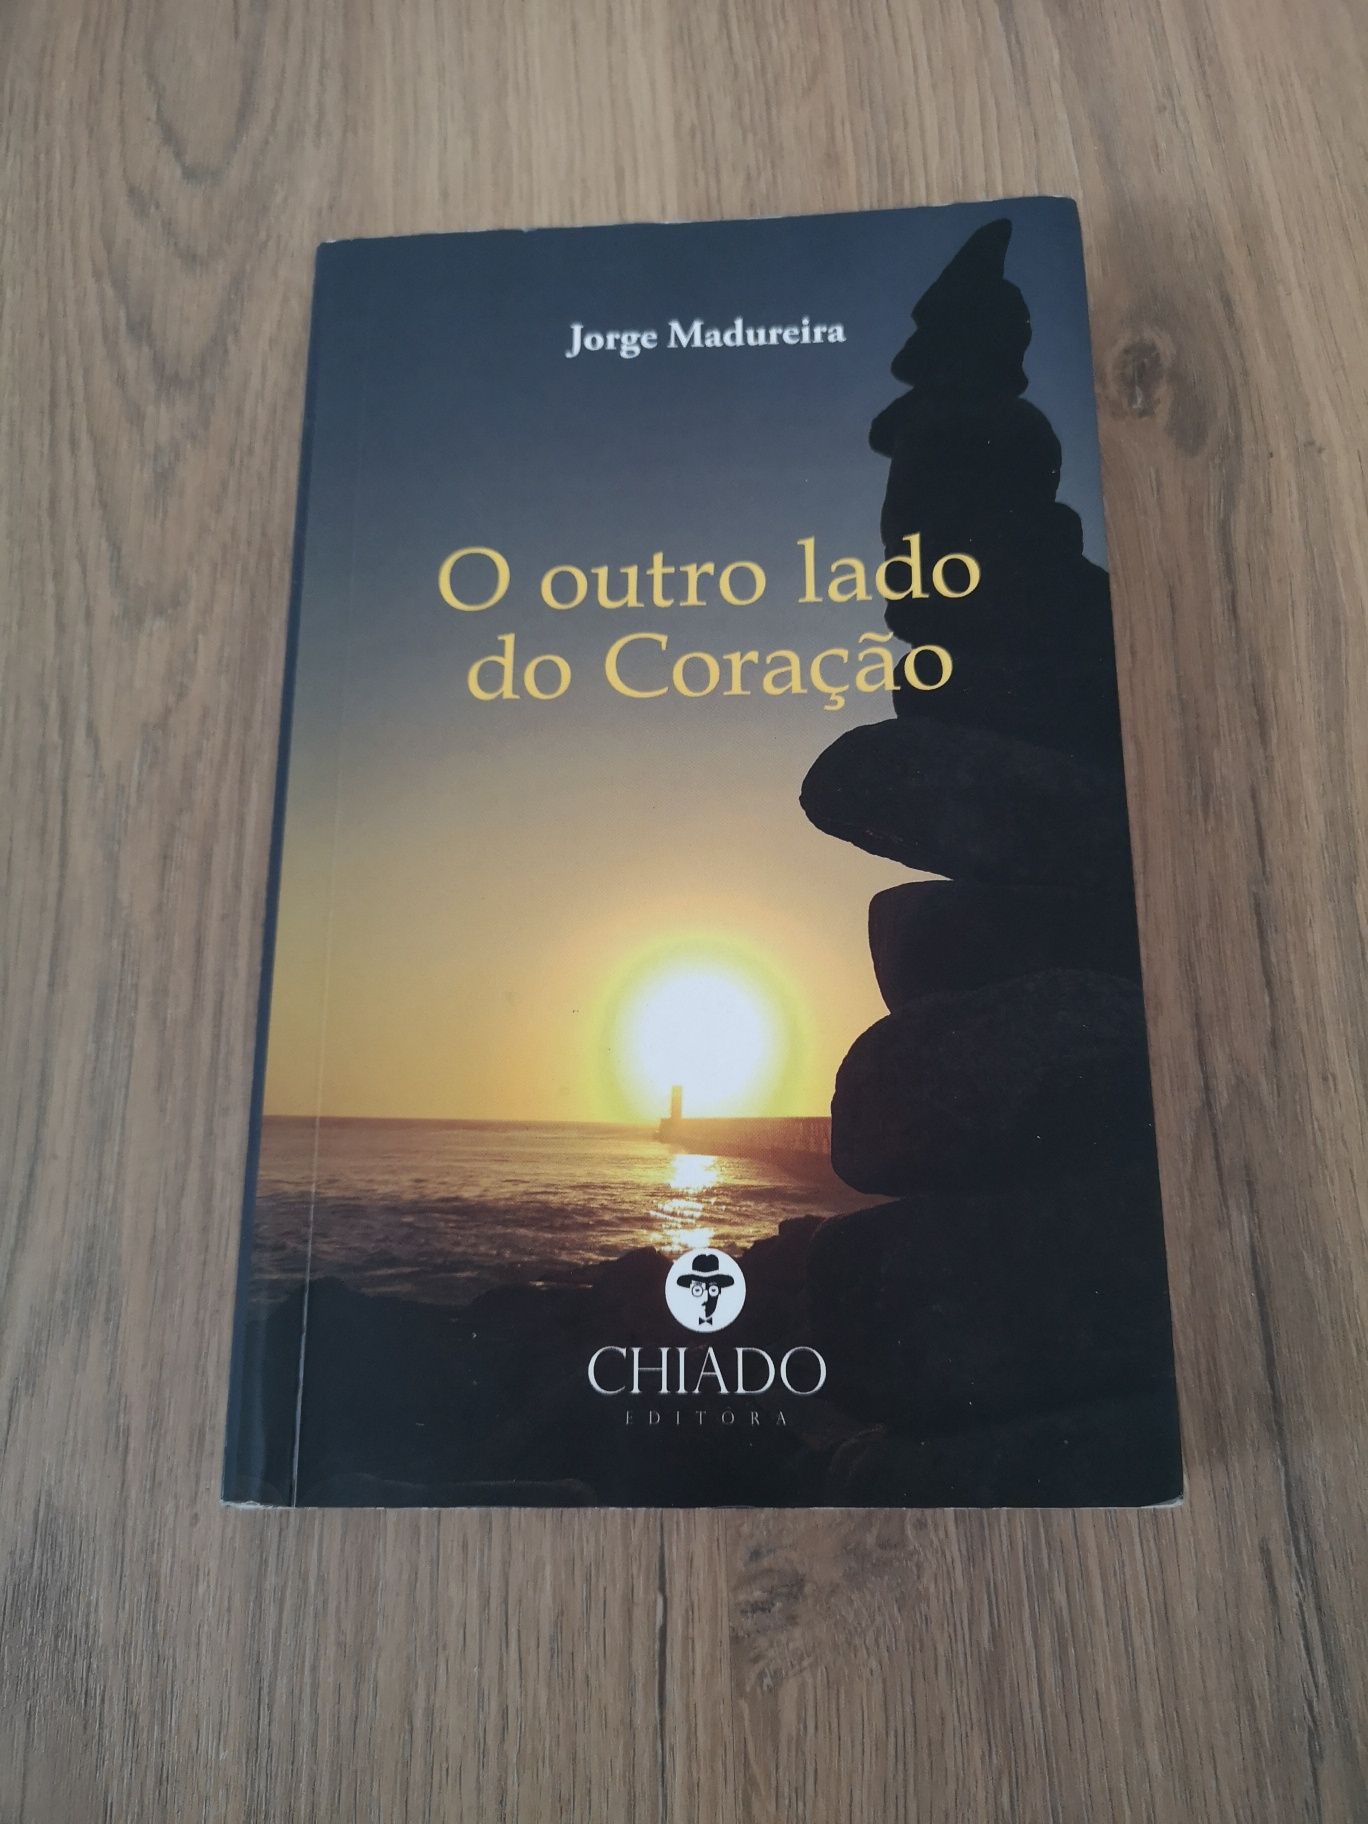 Vendo livro romance o outro lado do coração, Jorge Madureira